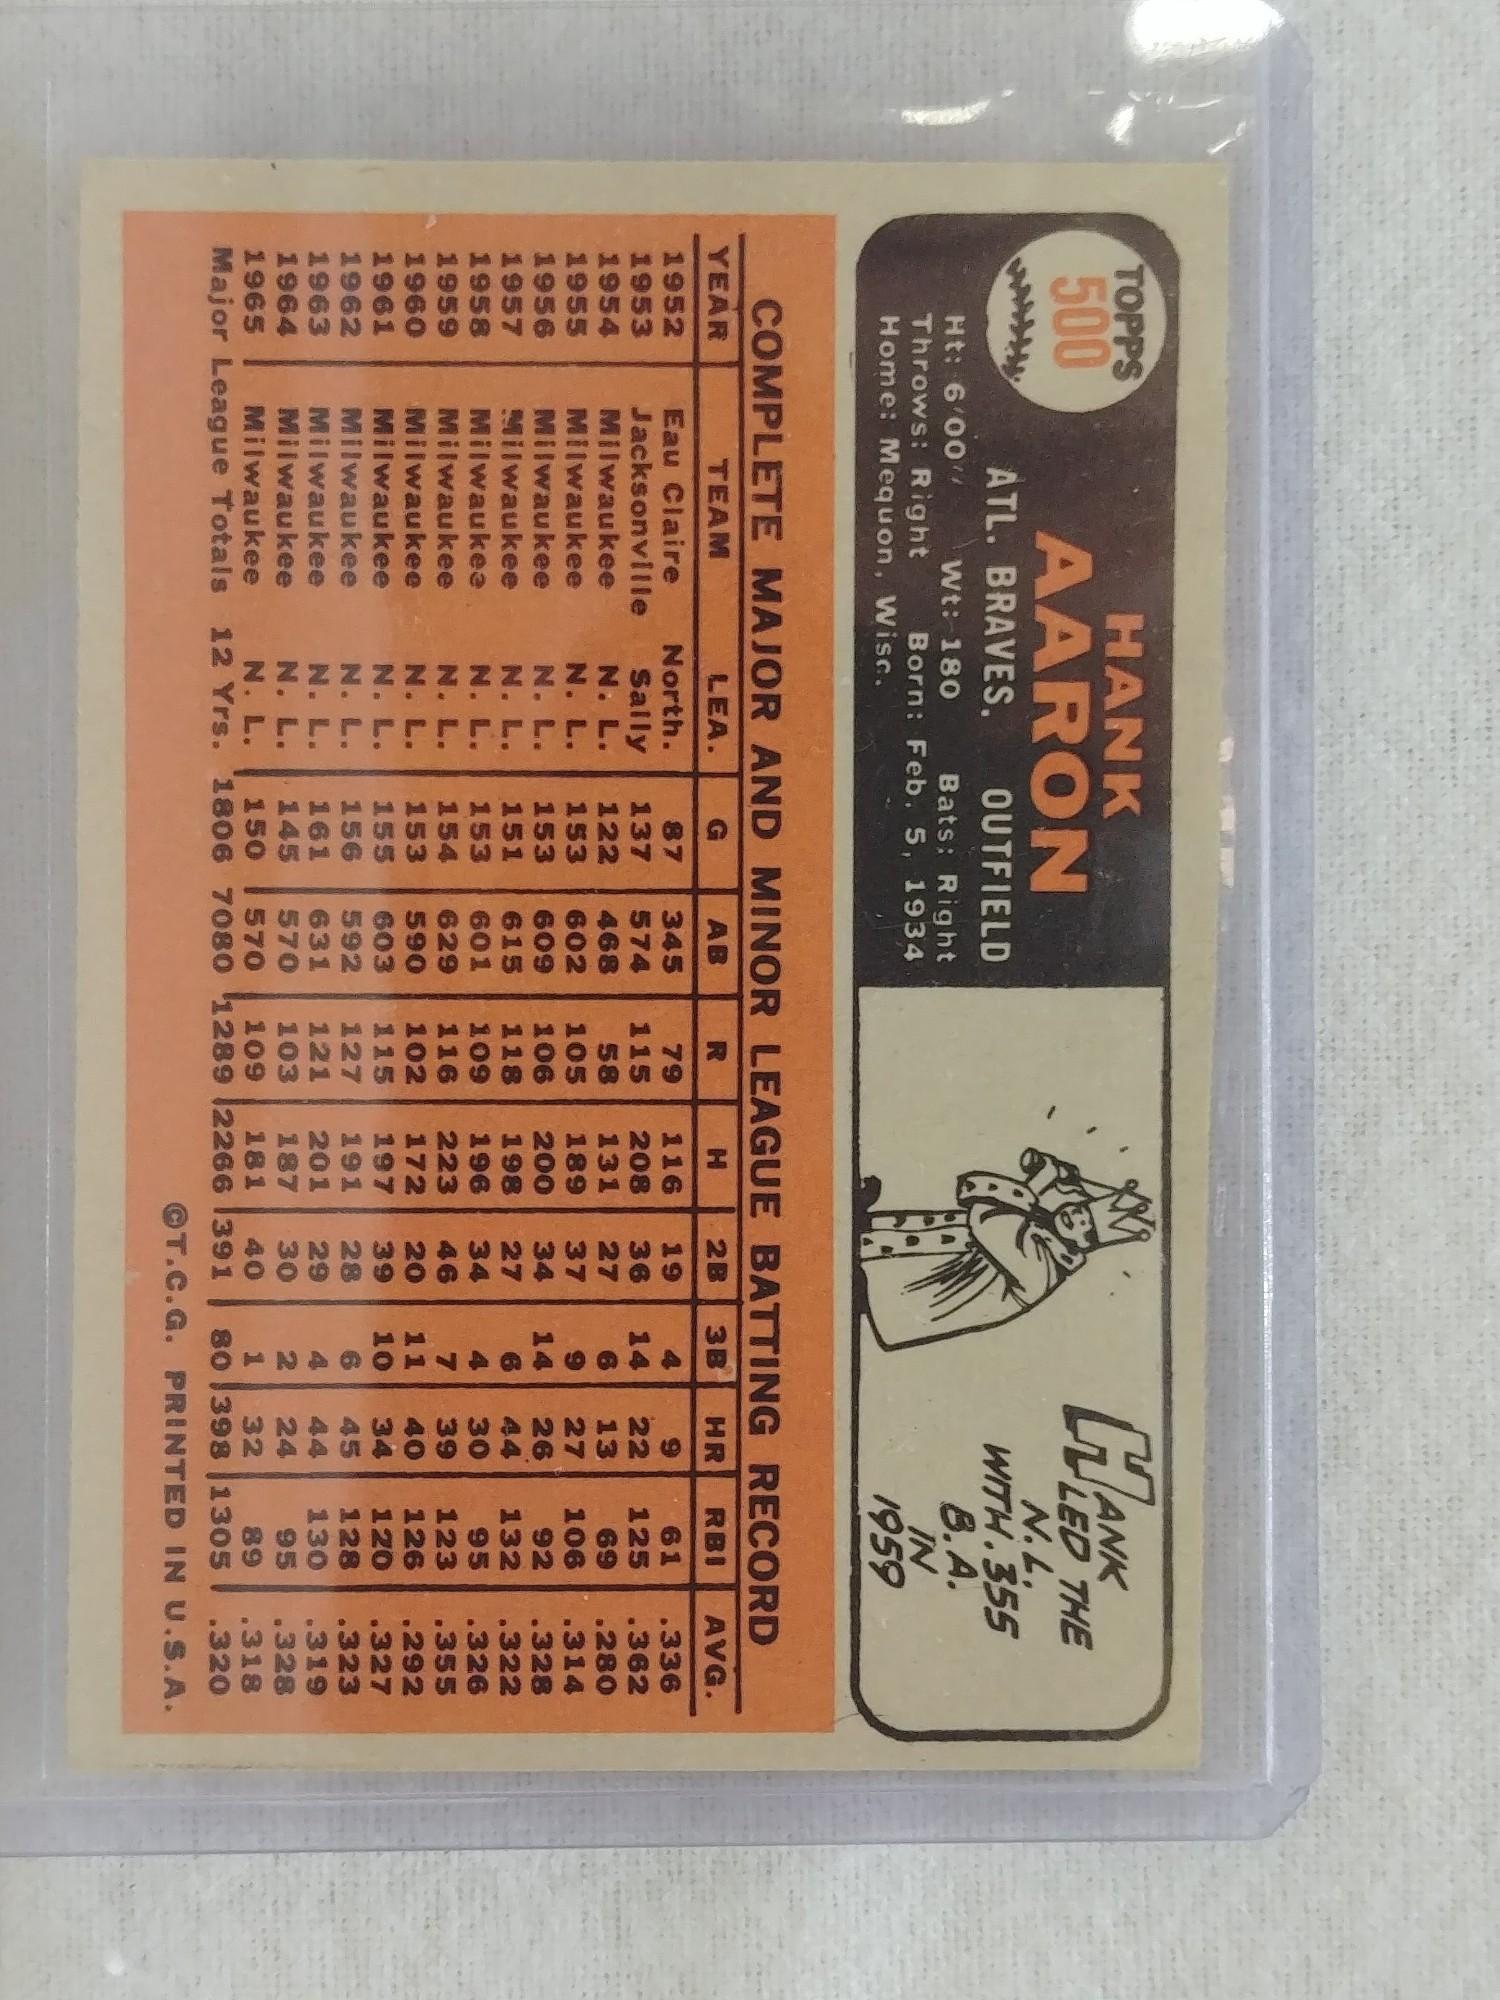 Hank Aaron 1966 Topps Baseball Card